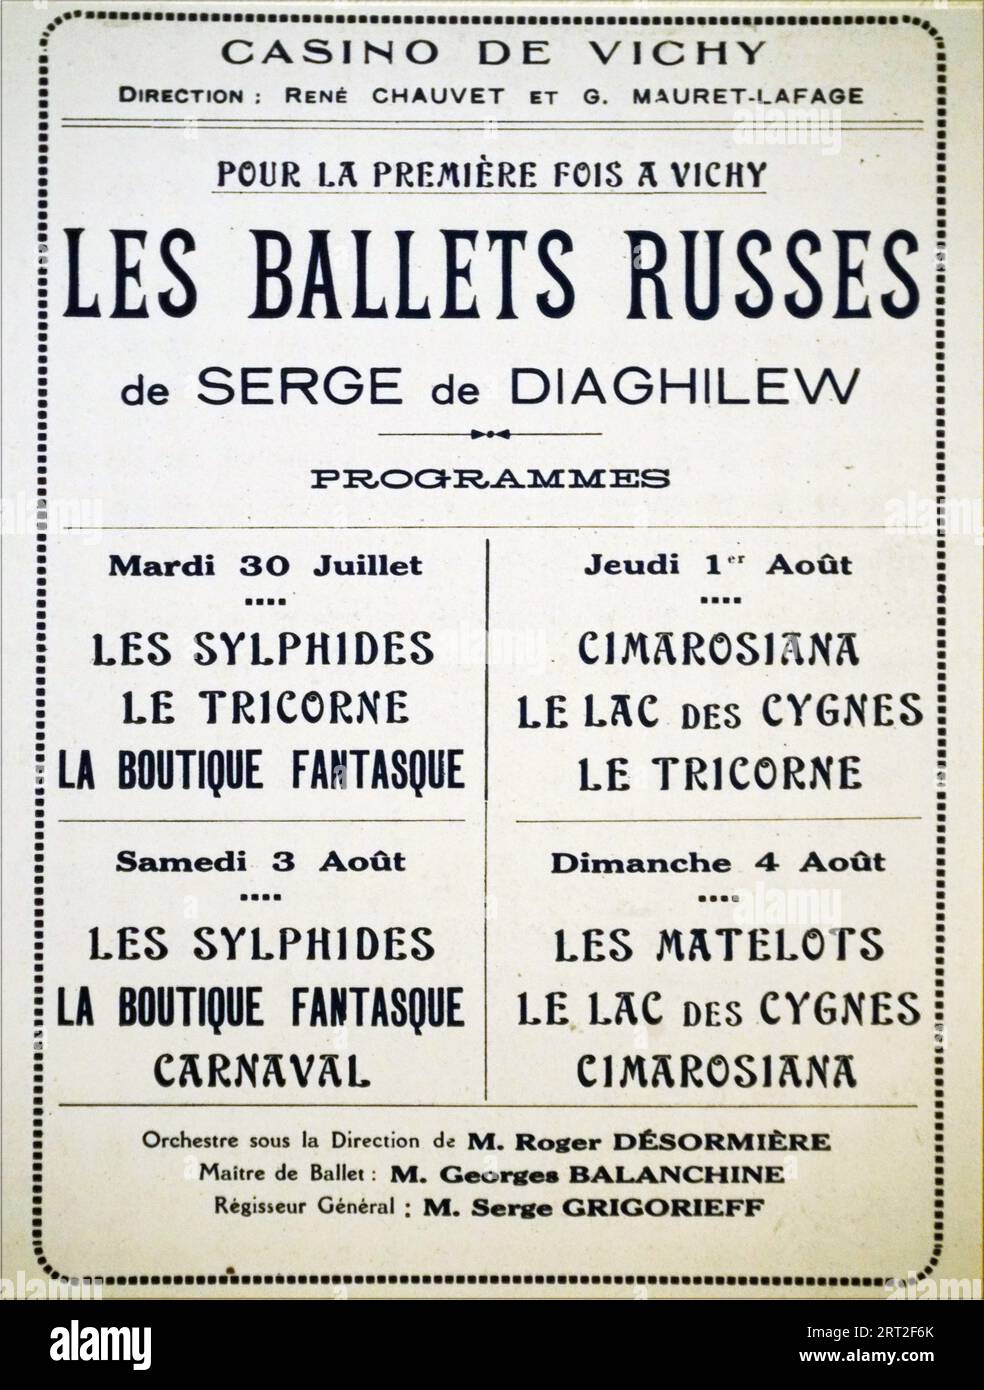 Affiche des Ballets russes du 30 juillet au 4 ao&#xfb;t 1929 &#xe0; l'OP&#xe9;ra de Vichy, 1929. Private Sammlung. Stockfoto